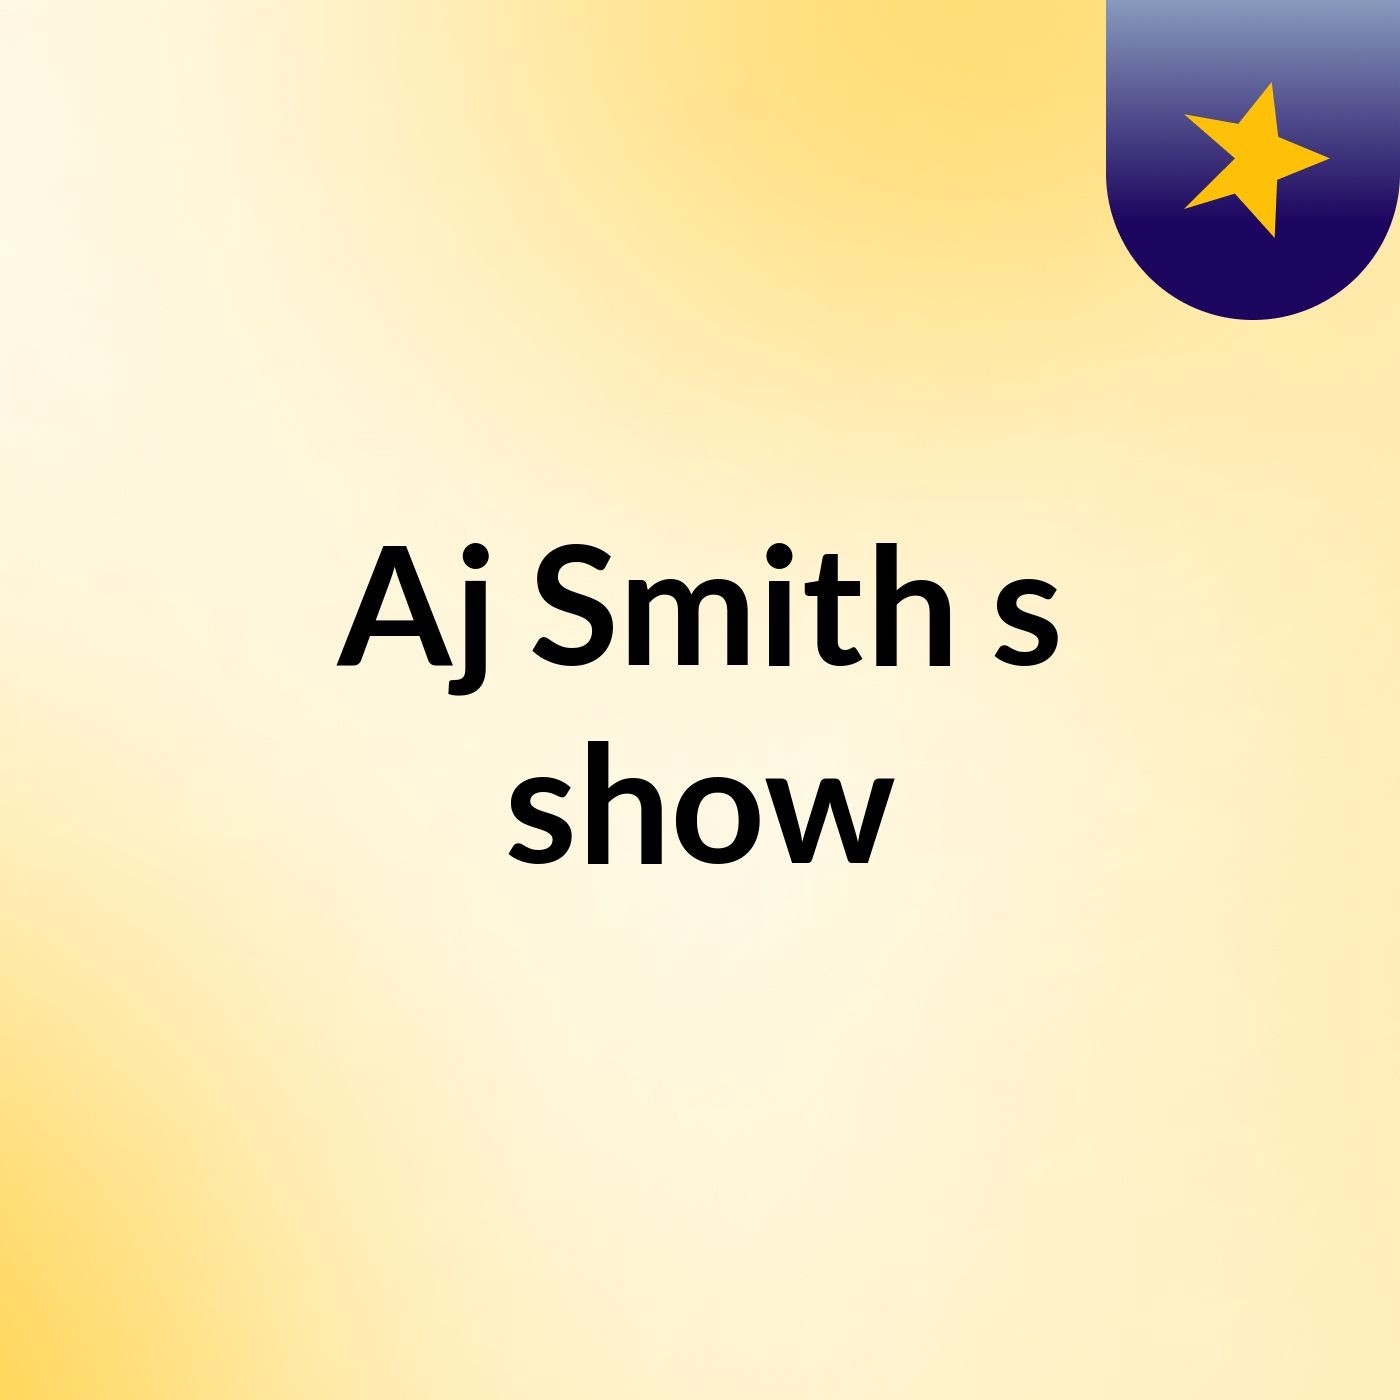 Episode 10 - Aj Smith's show